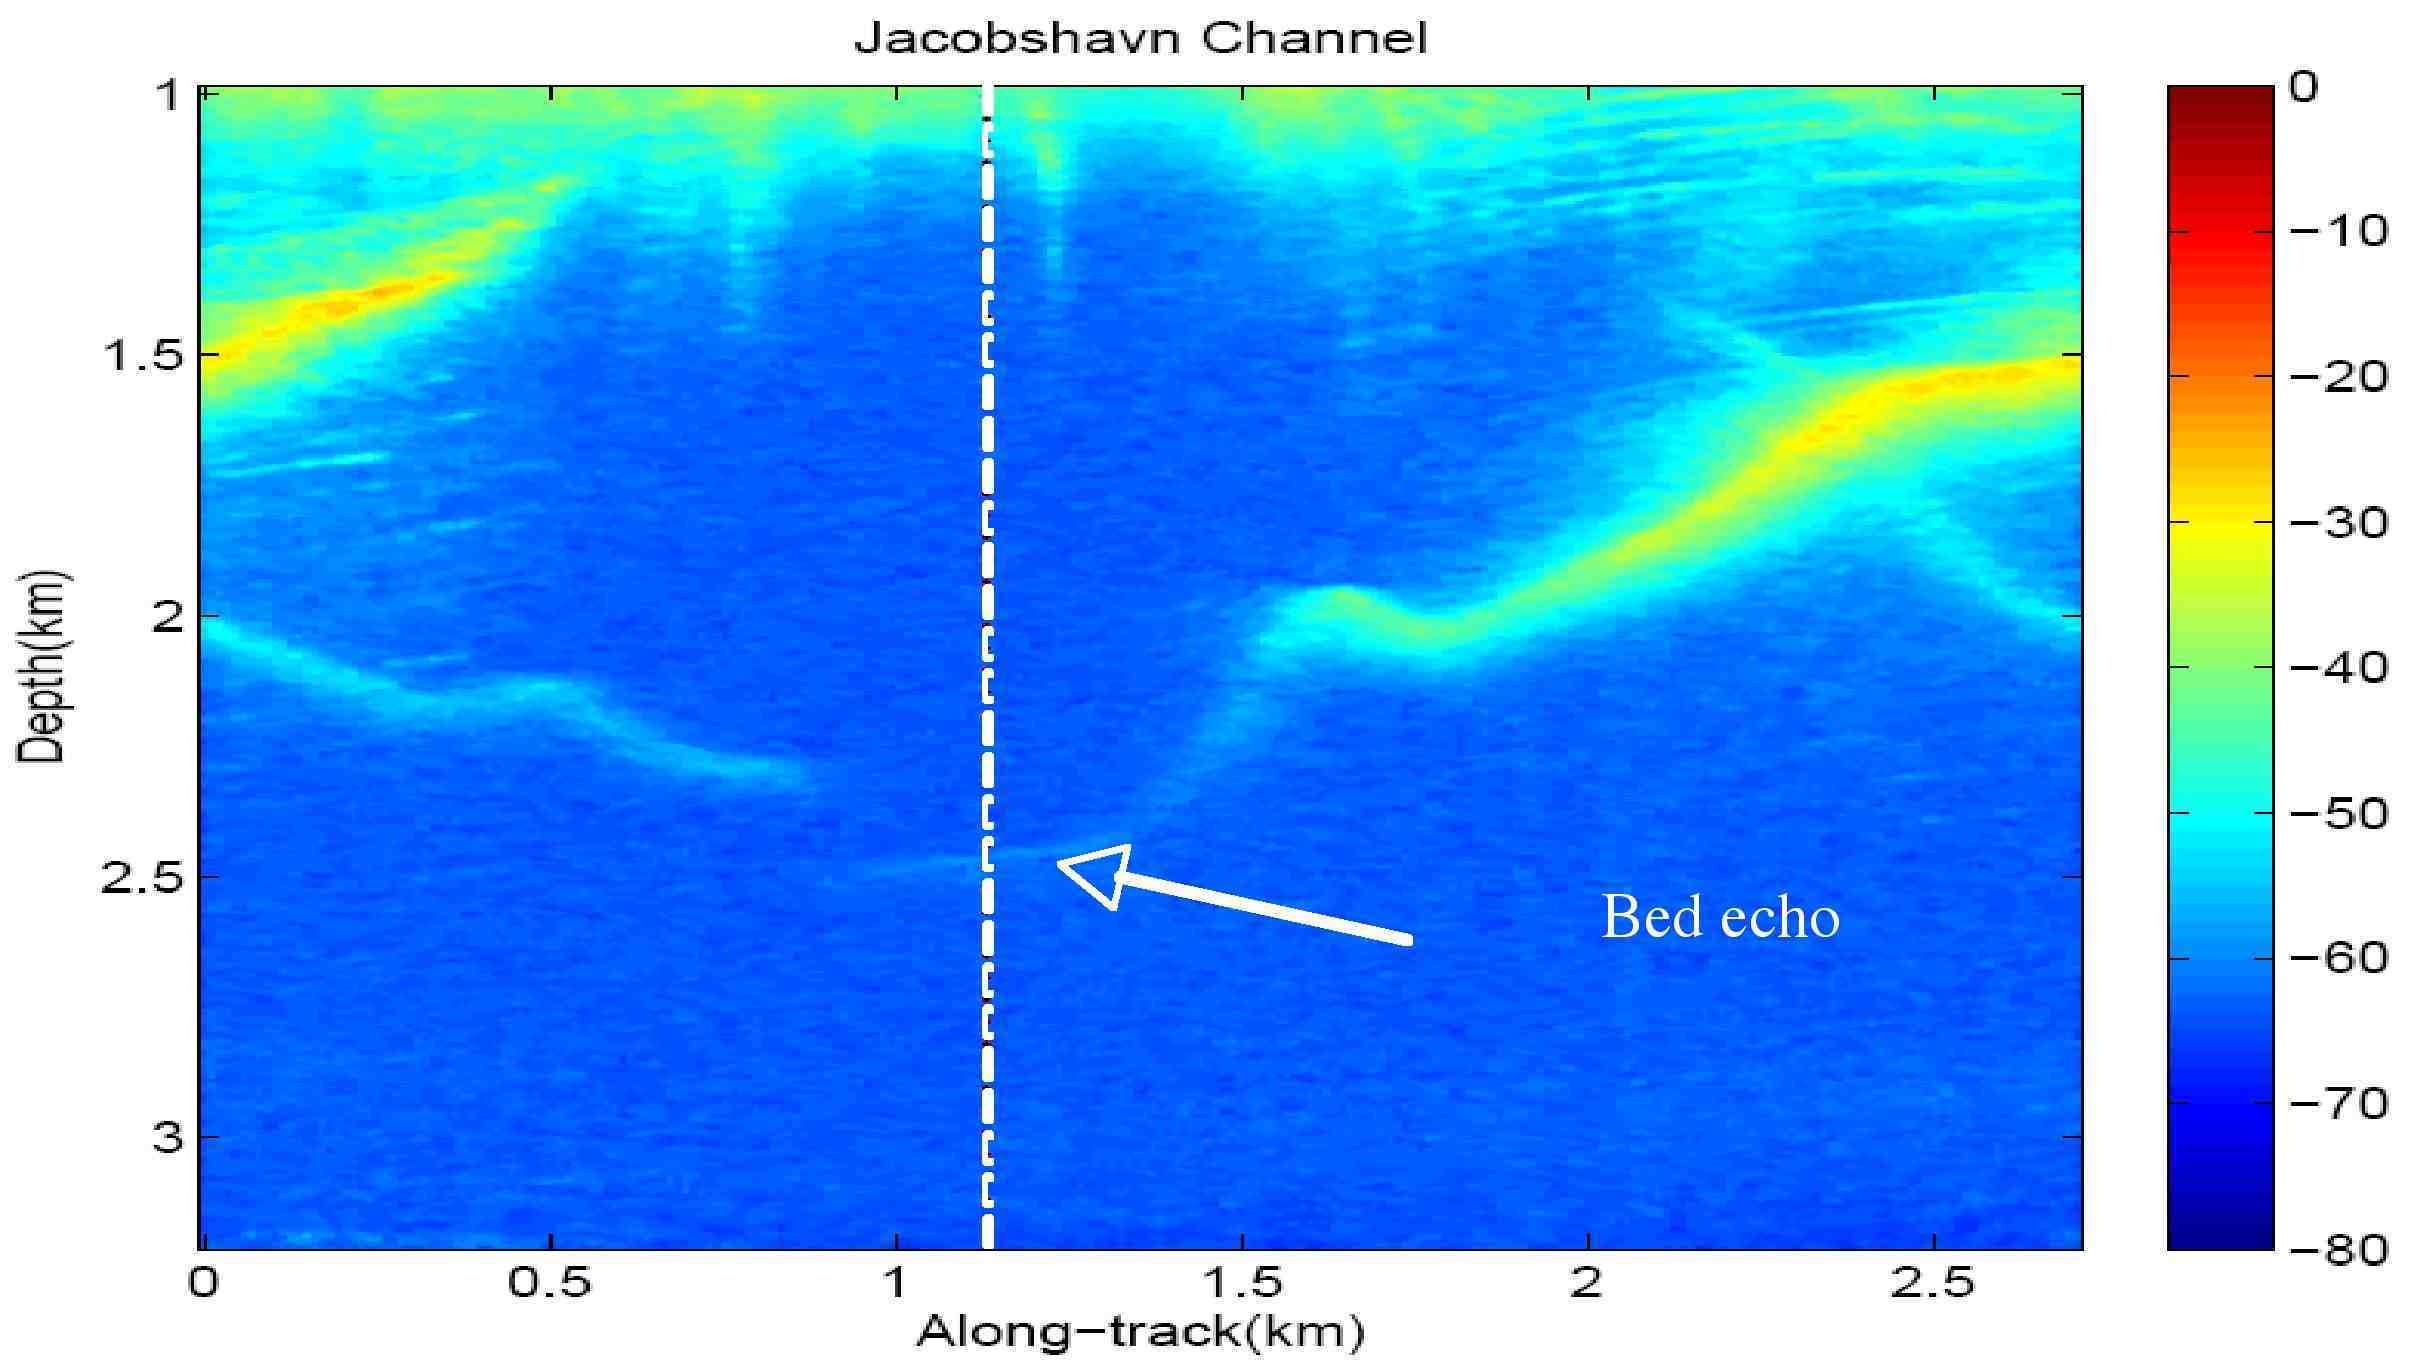 Image of zoomed version of a radar echogram of the Jakobshavn channel.